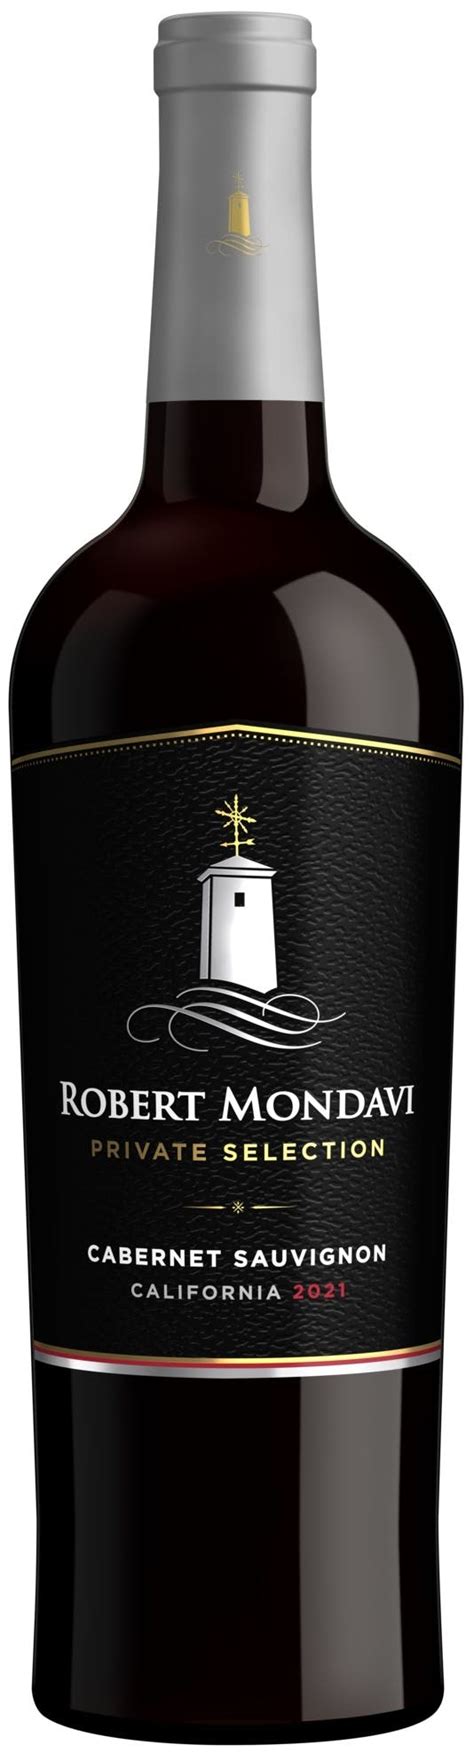 Robert Mondavi Private Selection Cabernet Sauvignon 2021 750ml Vine